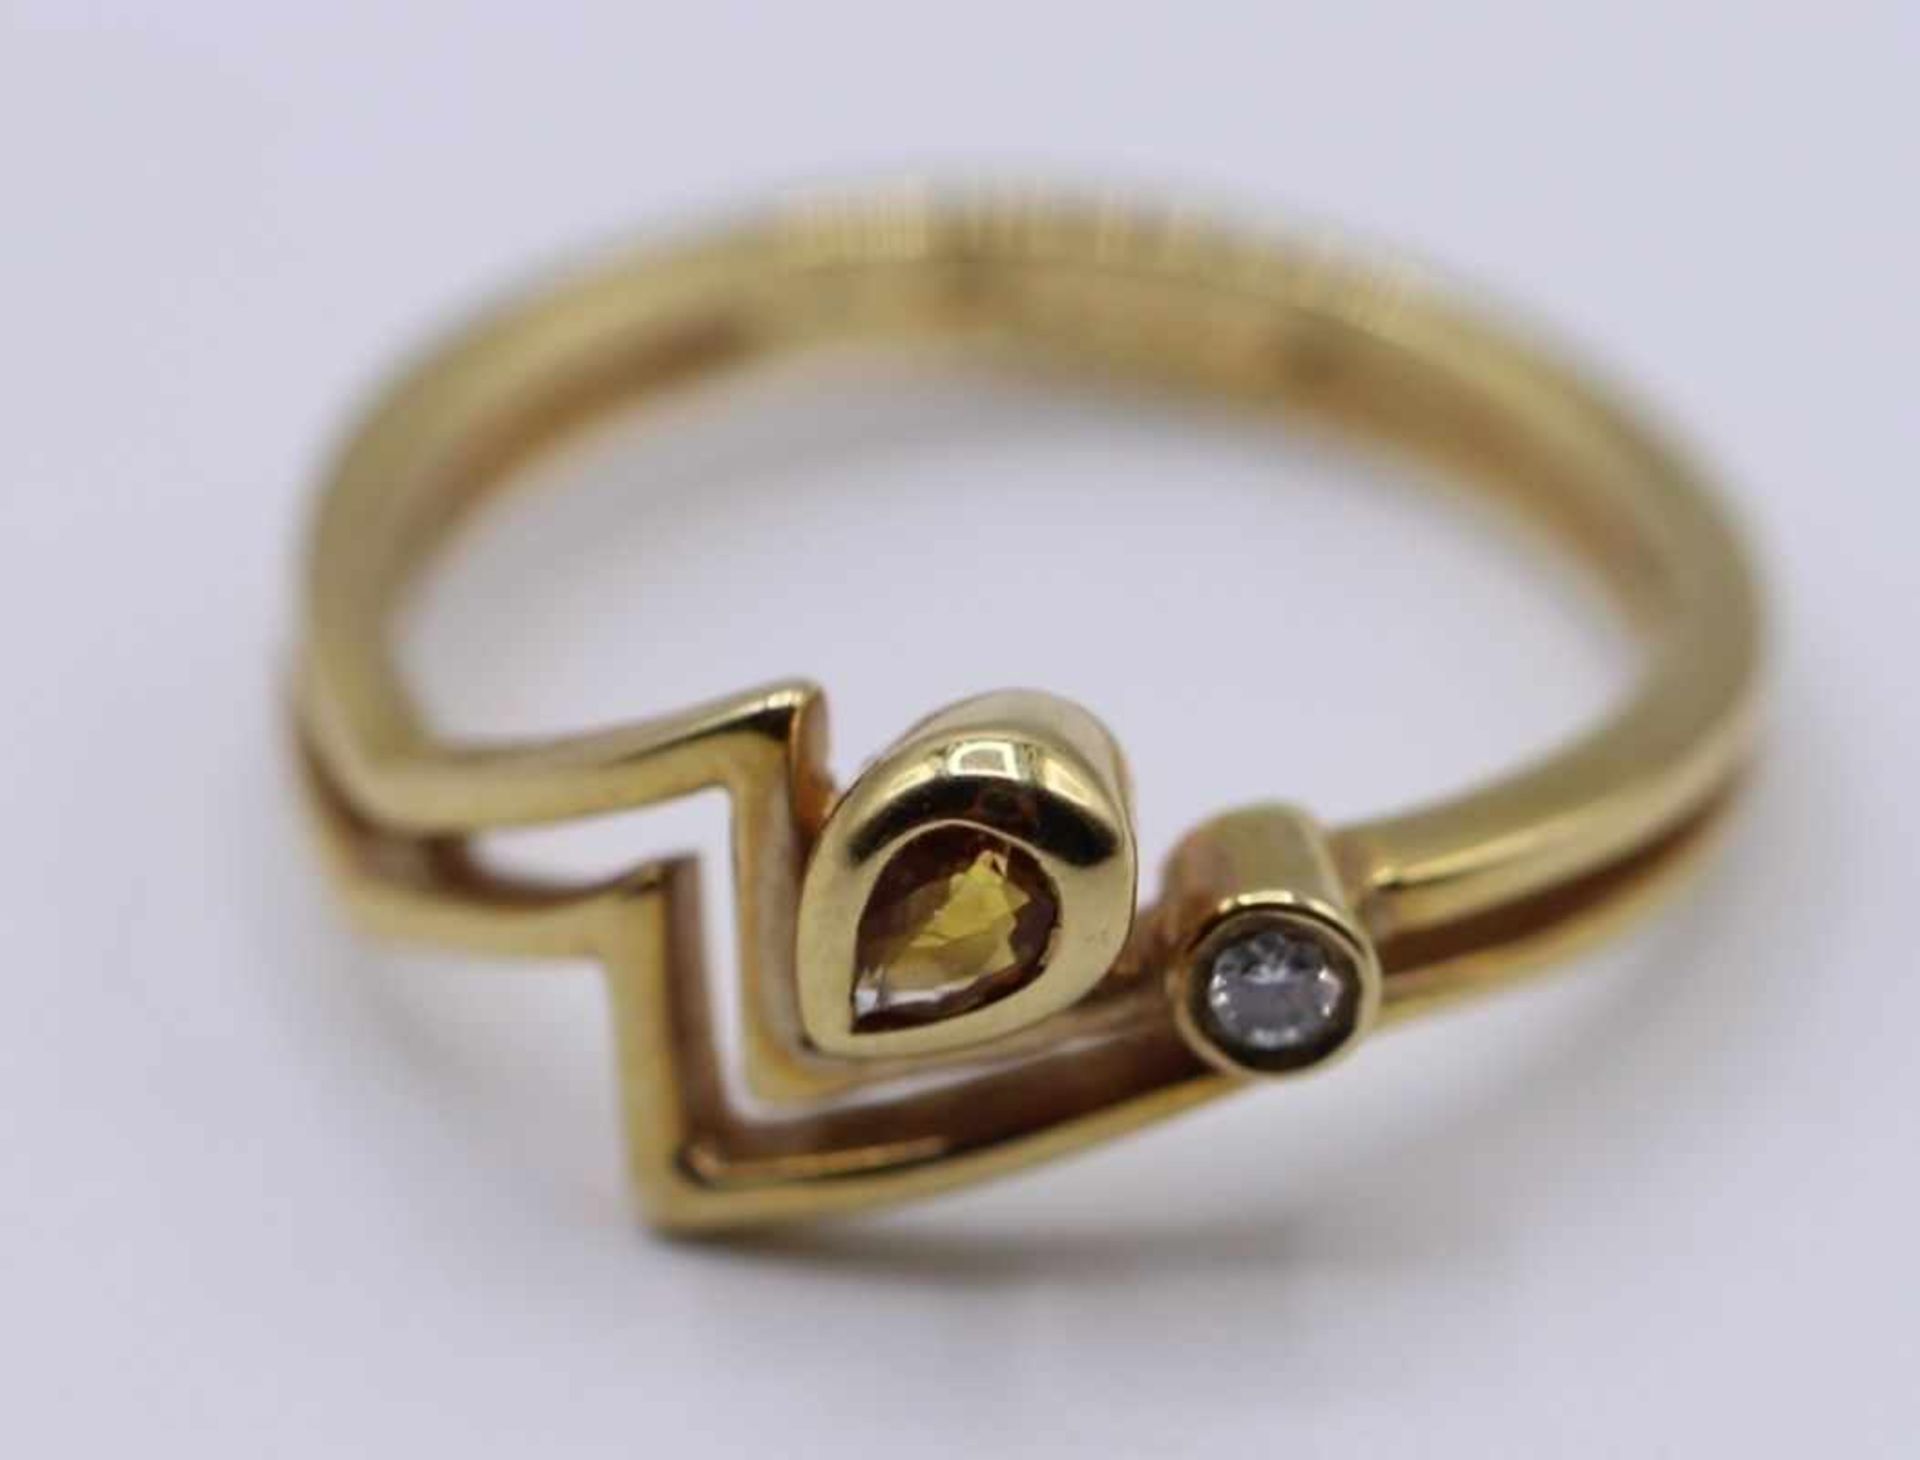 Goldener Damenring - Gelbgold gest. 585 mit kl. Brillant und Citrin verziert, Ringgröße 54, ca. 2,